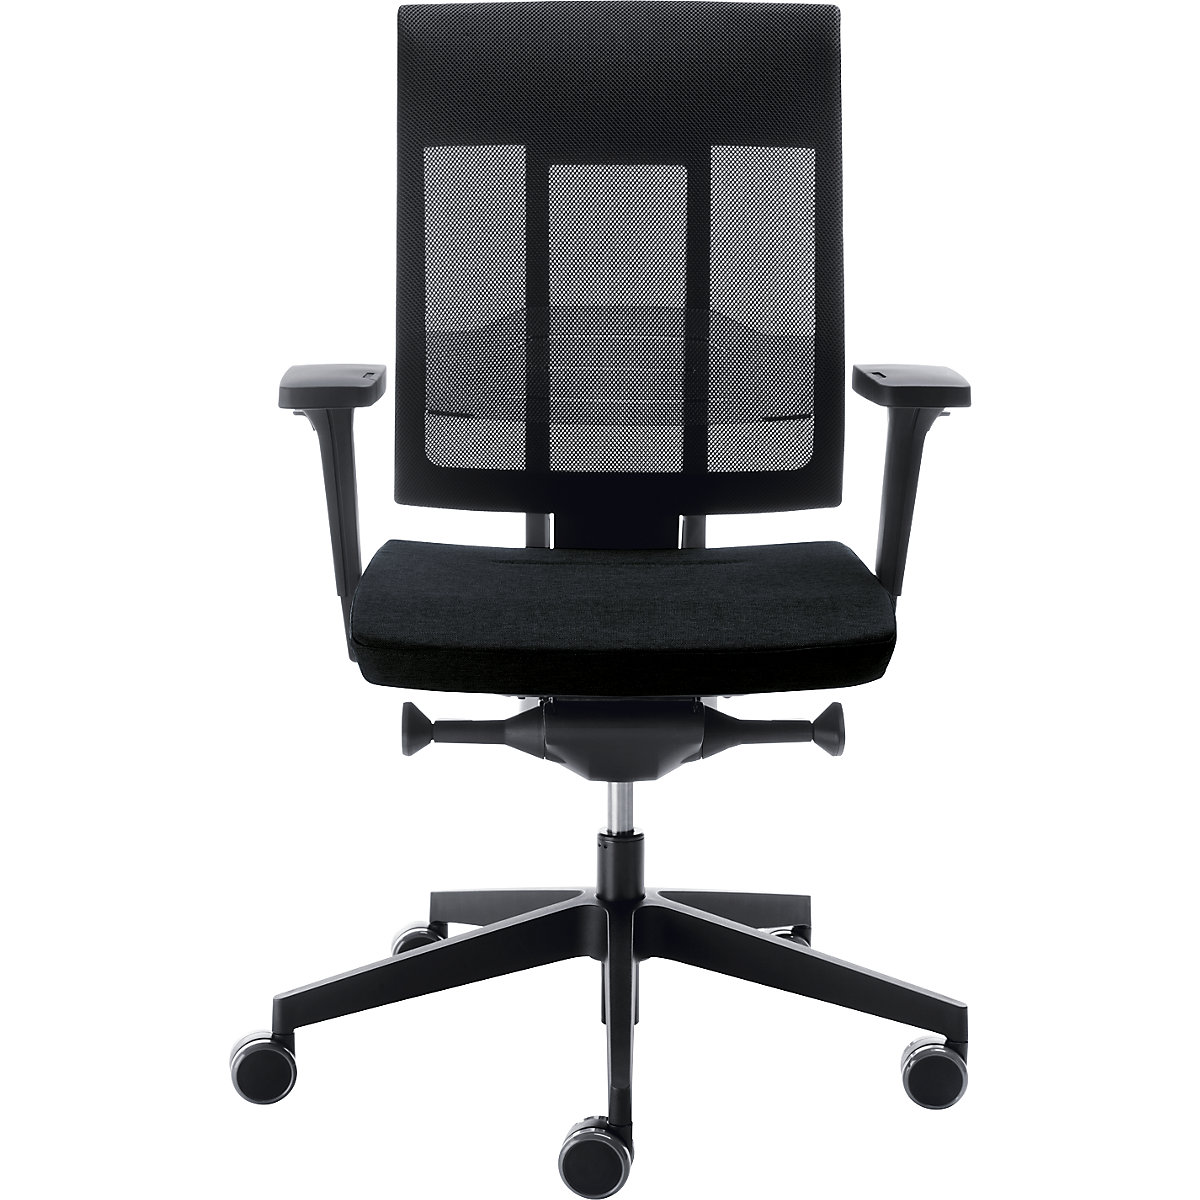 XENON office swivel chair